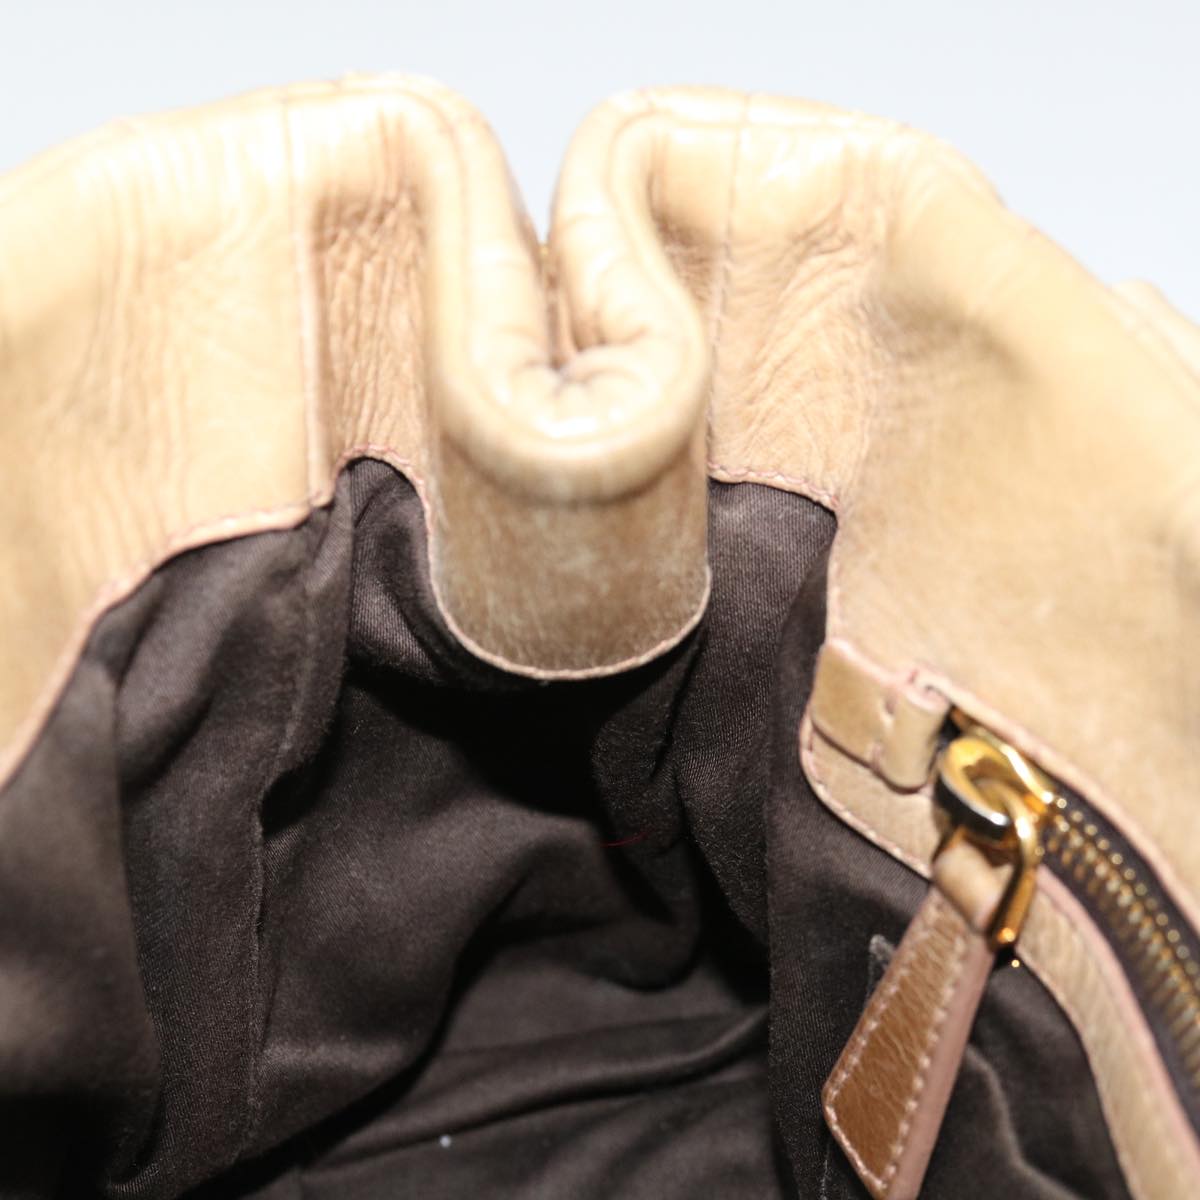 Miu Miu Materasse Hand Bag Leather Beige Auth bs13686